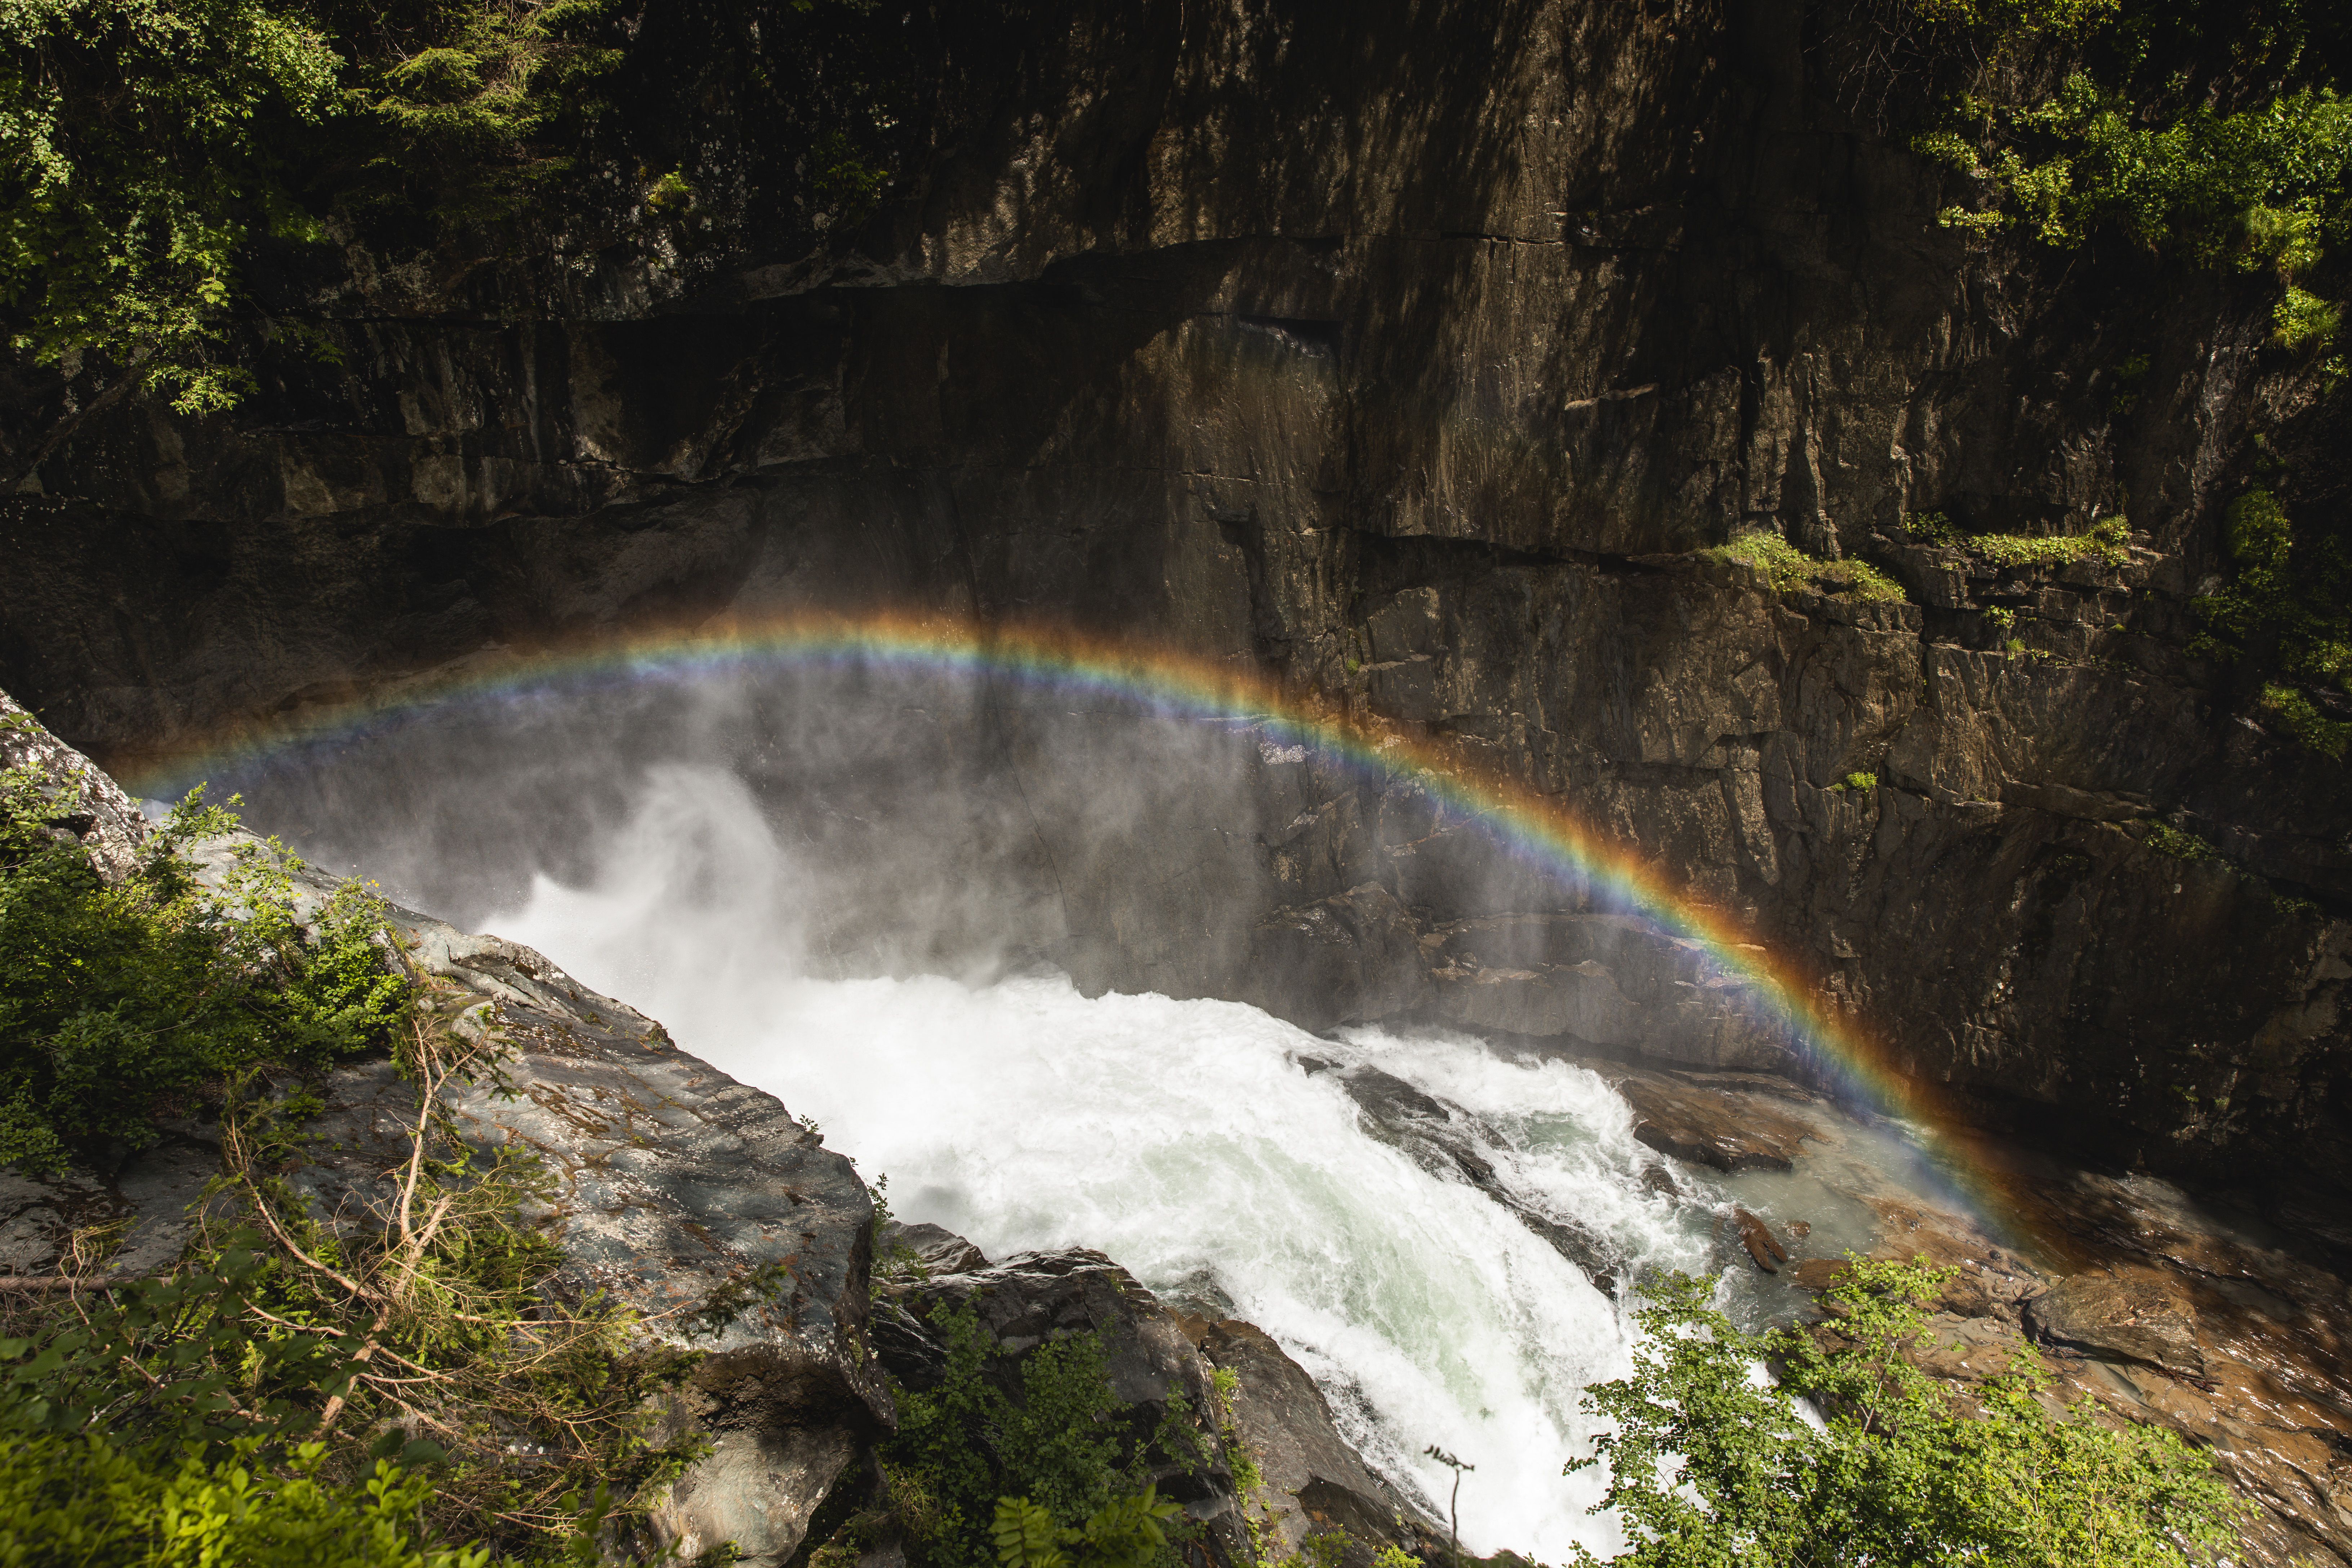 In die Gischt über dem tosenden Wasser des Flusses malt das Sonnenlicht einen bunten Regenbogen an die graue Felswand.